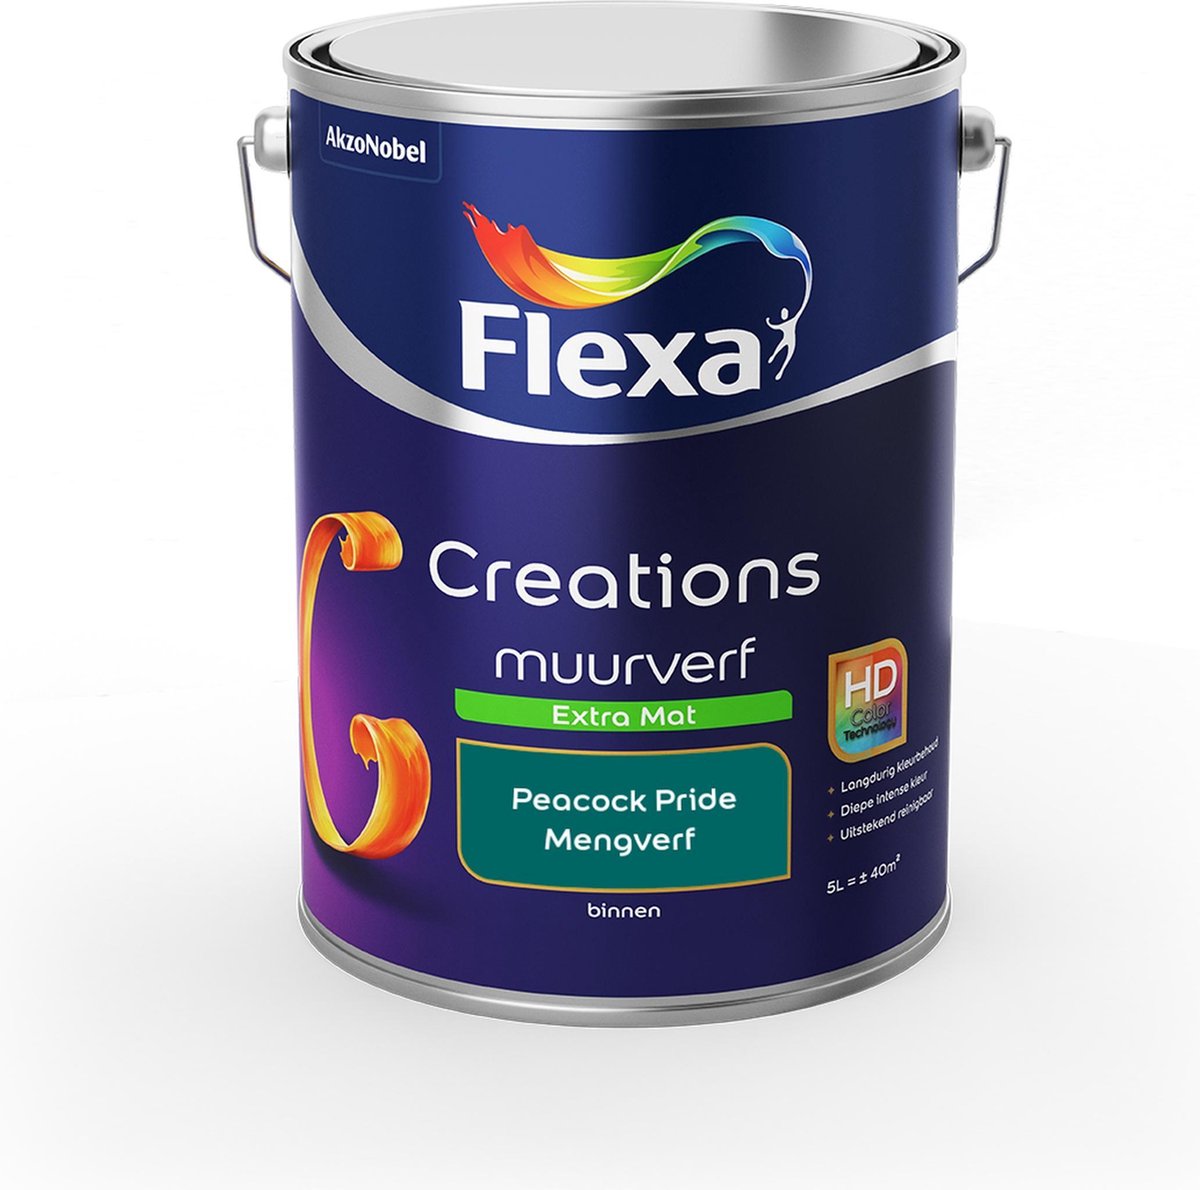 Flexa Creations - Muurverf Extra Mat - Peacock Pride - Mengkleuren Collectie - 5 Liter